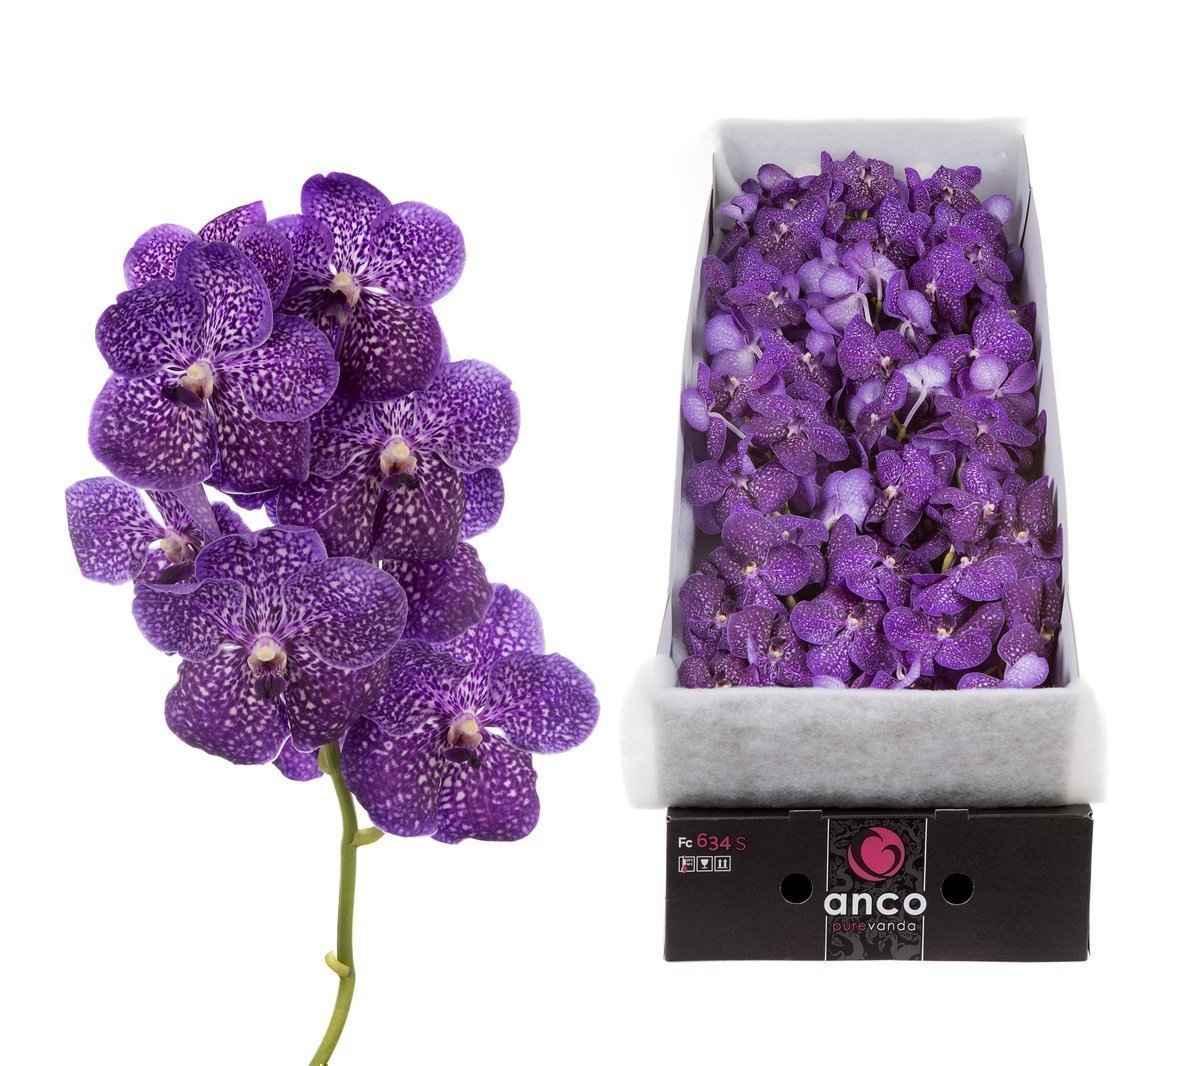 Срезанные цветы оптом Vanda sunanda violetta dark per stem от 8шт из Голландии с доставкой по России